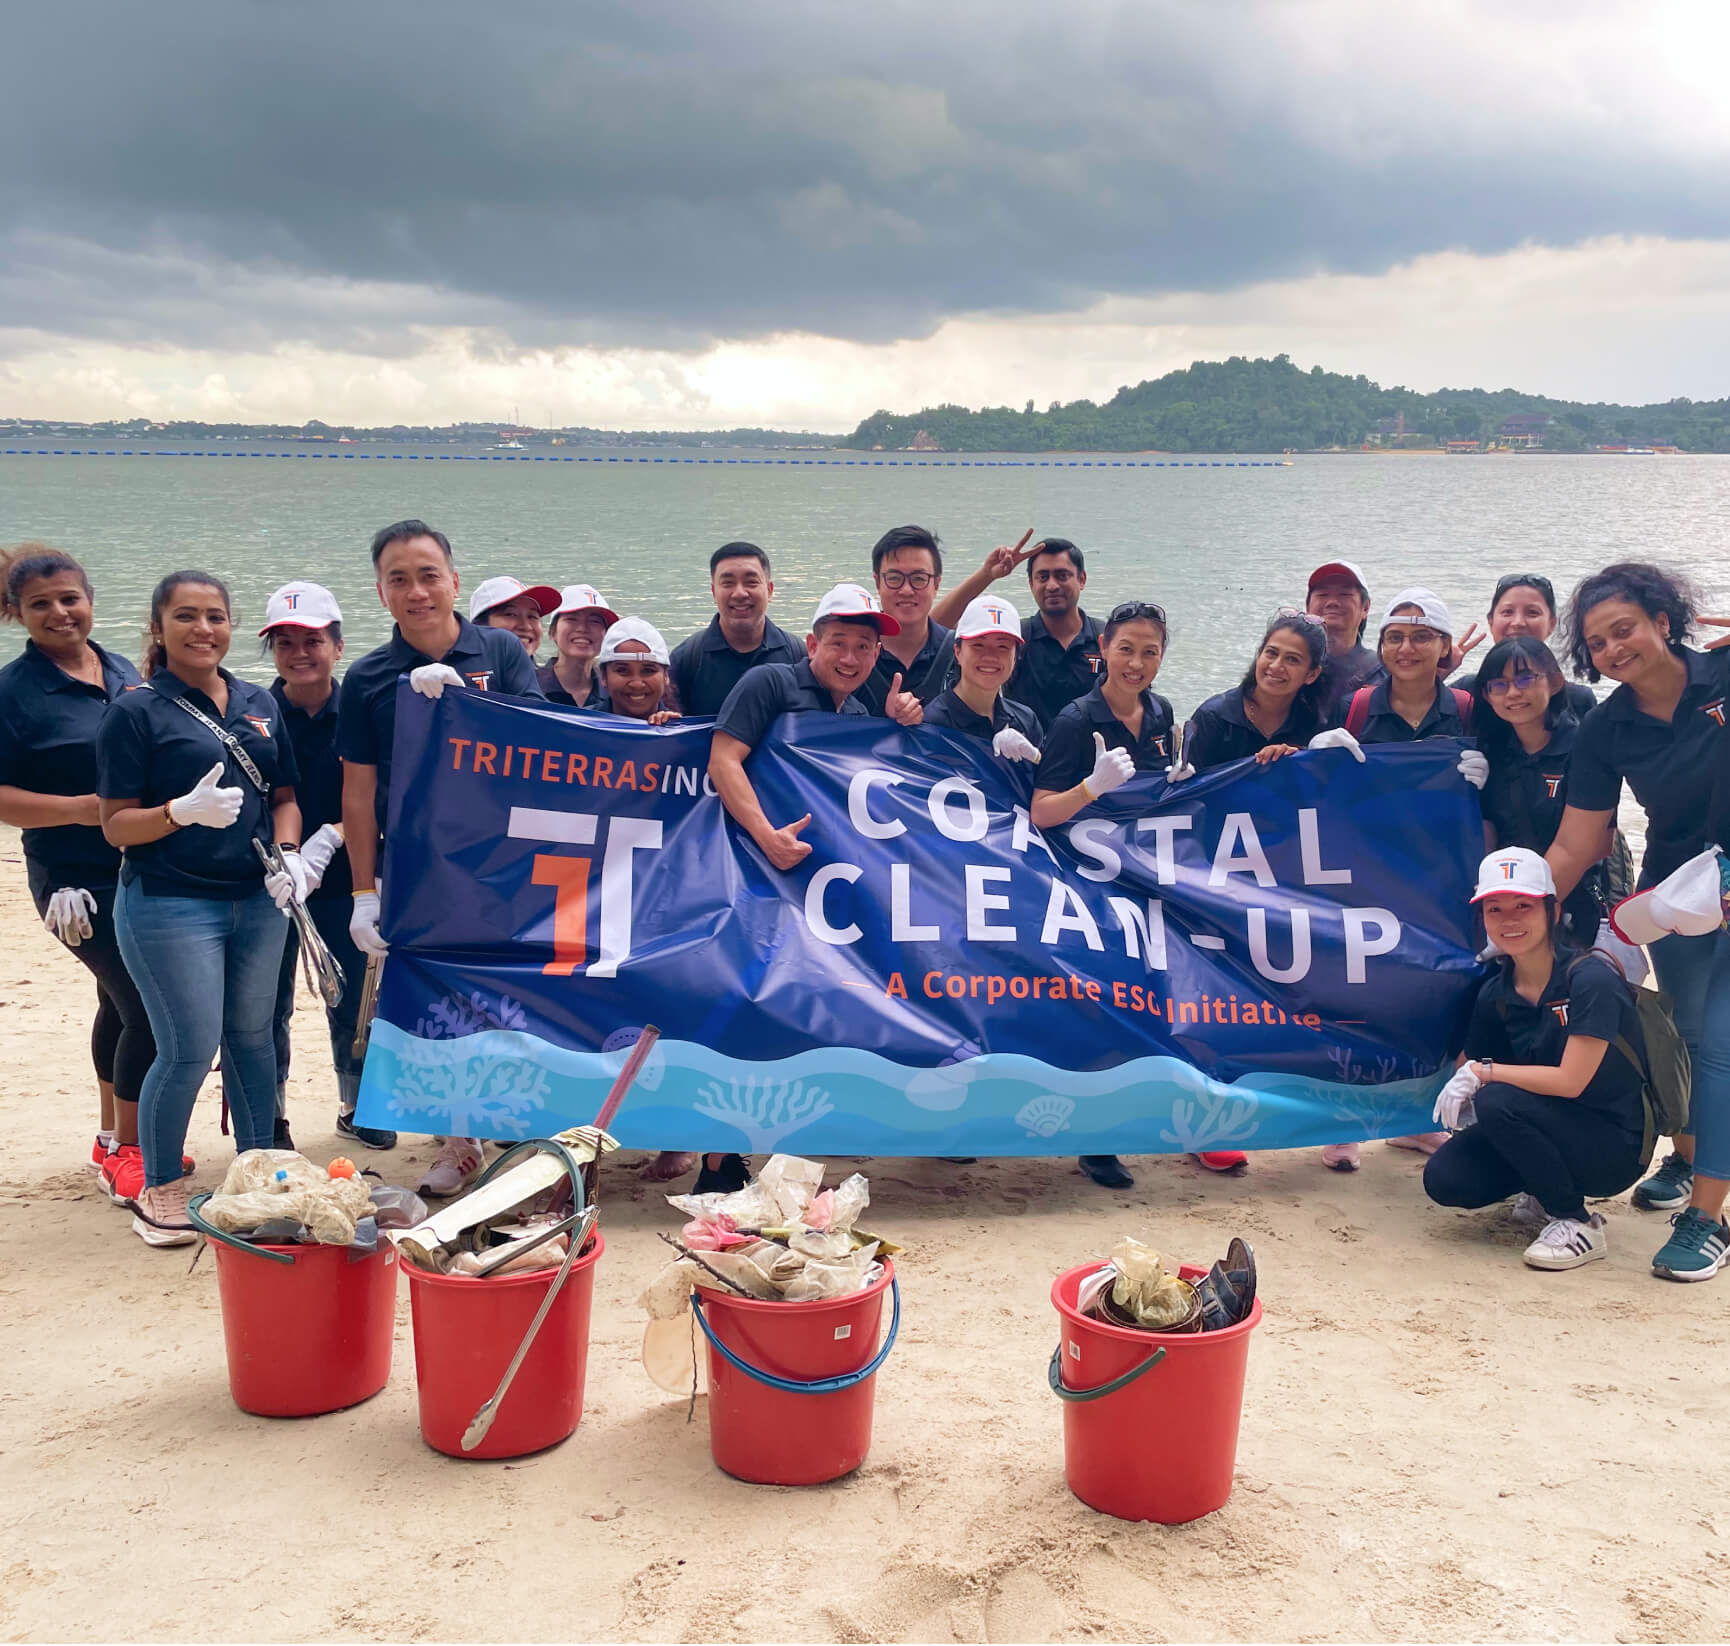 Triterras' team at a "Costal Clean-up" initiative.